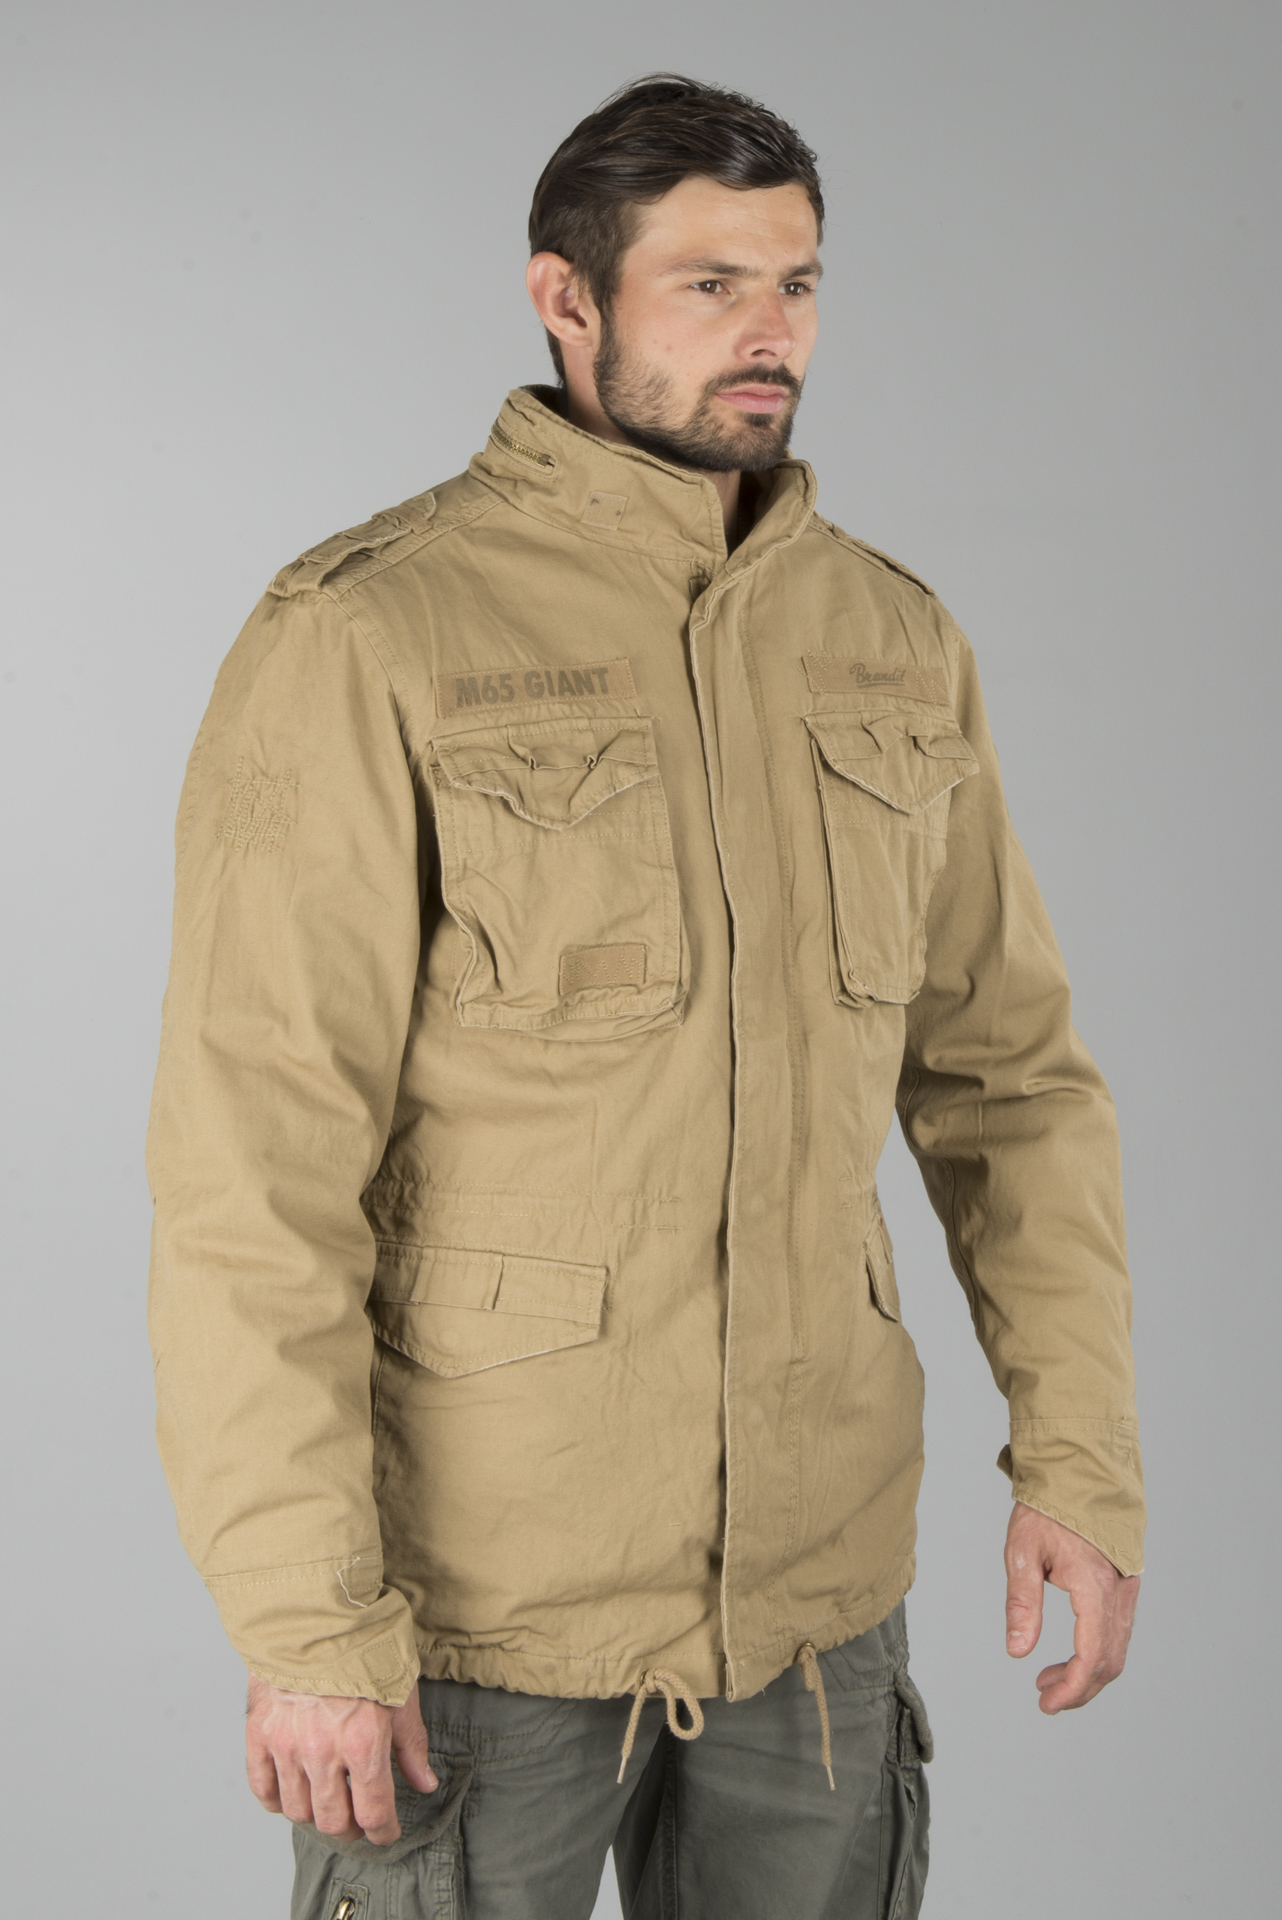 giant m65 jacket